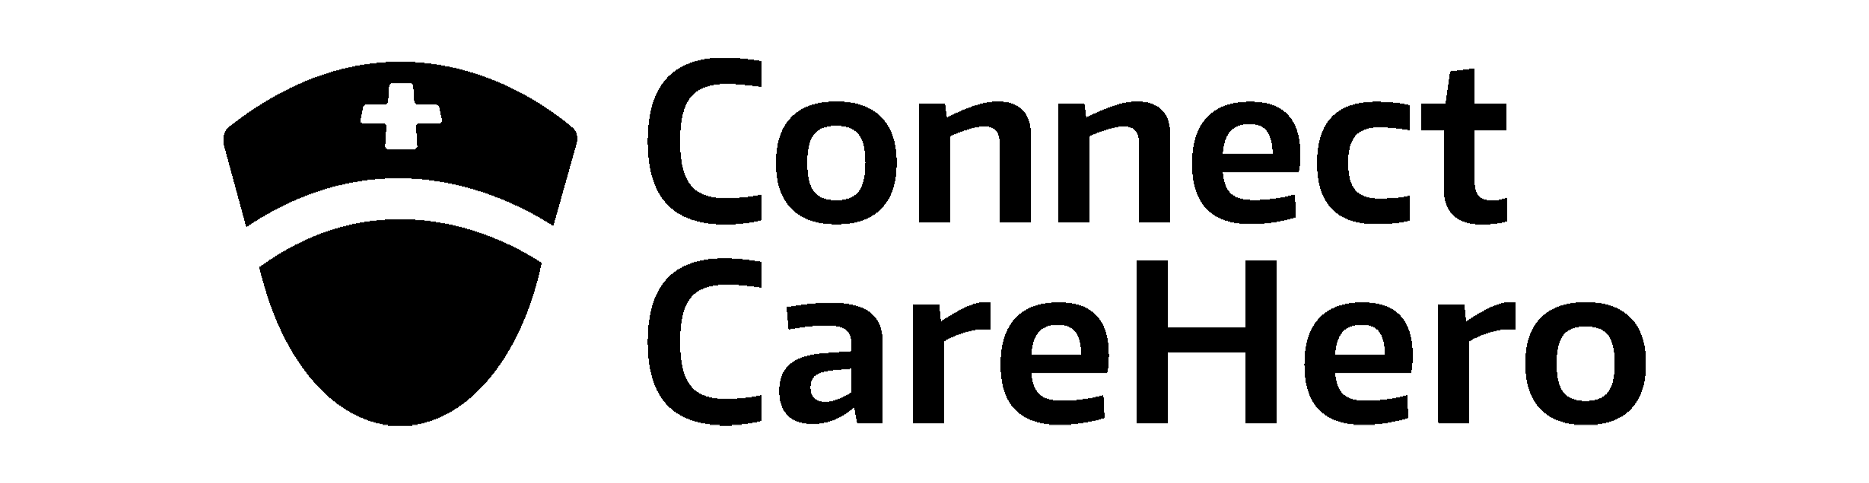 cch-black-logo.png